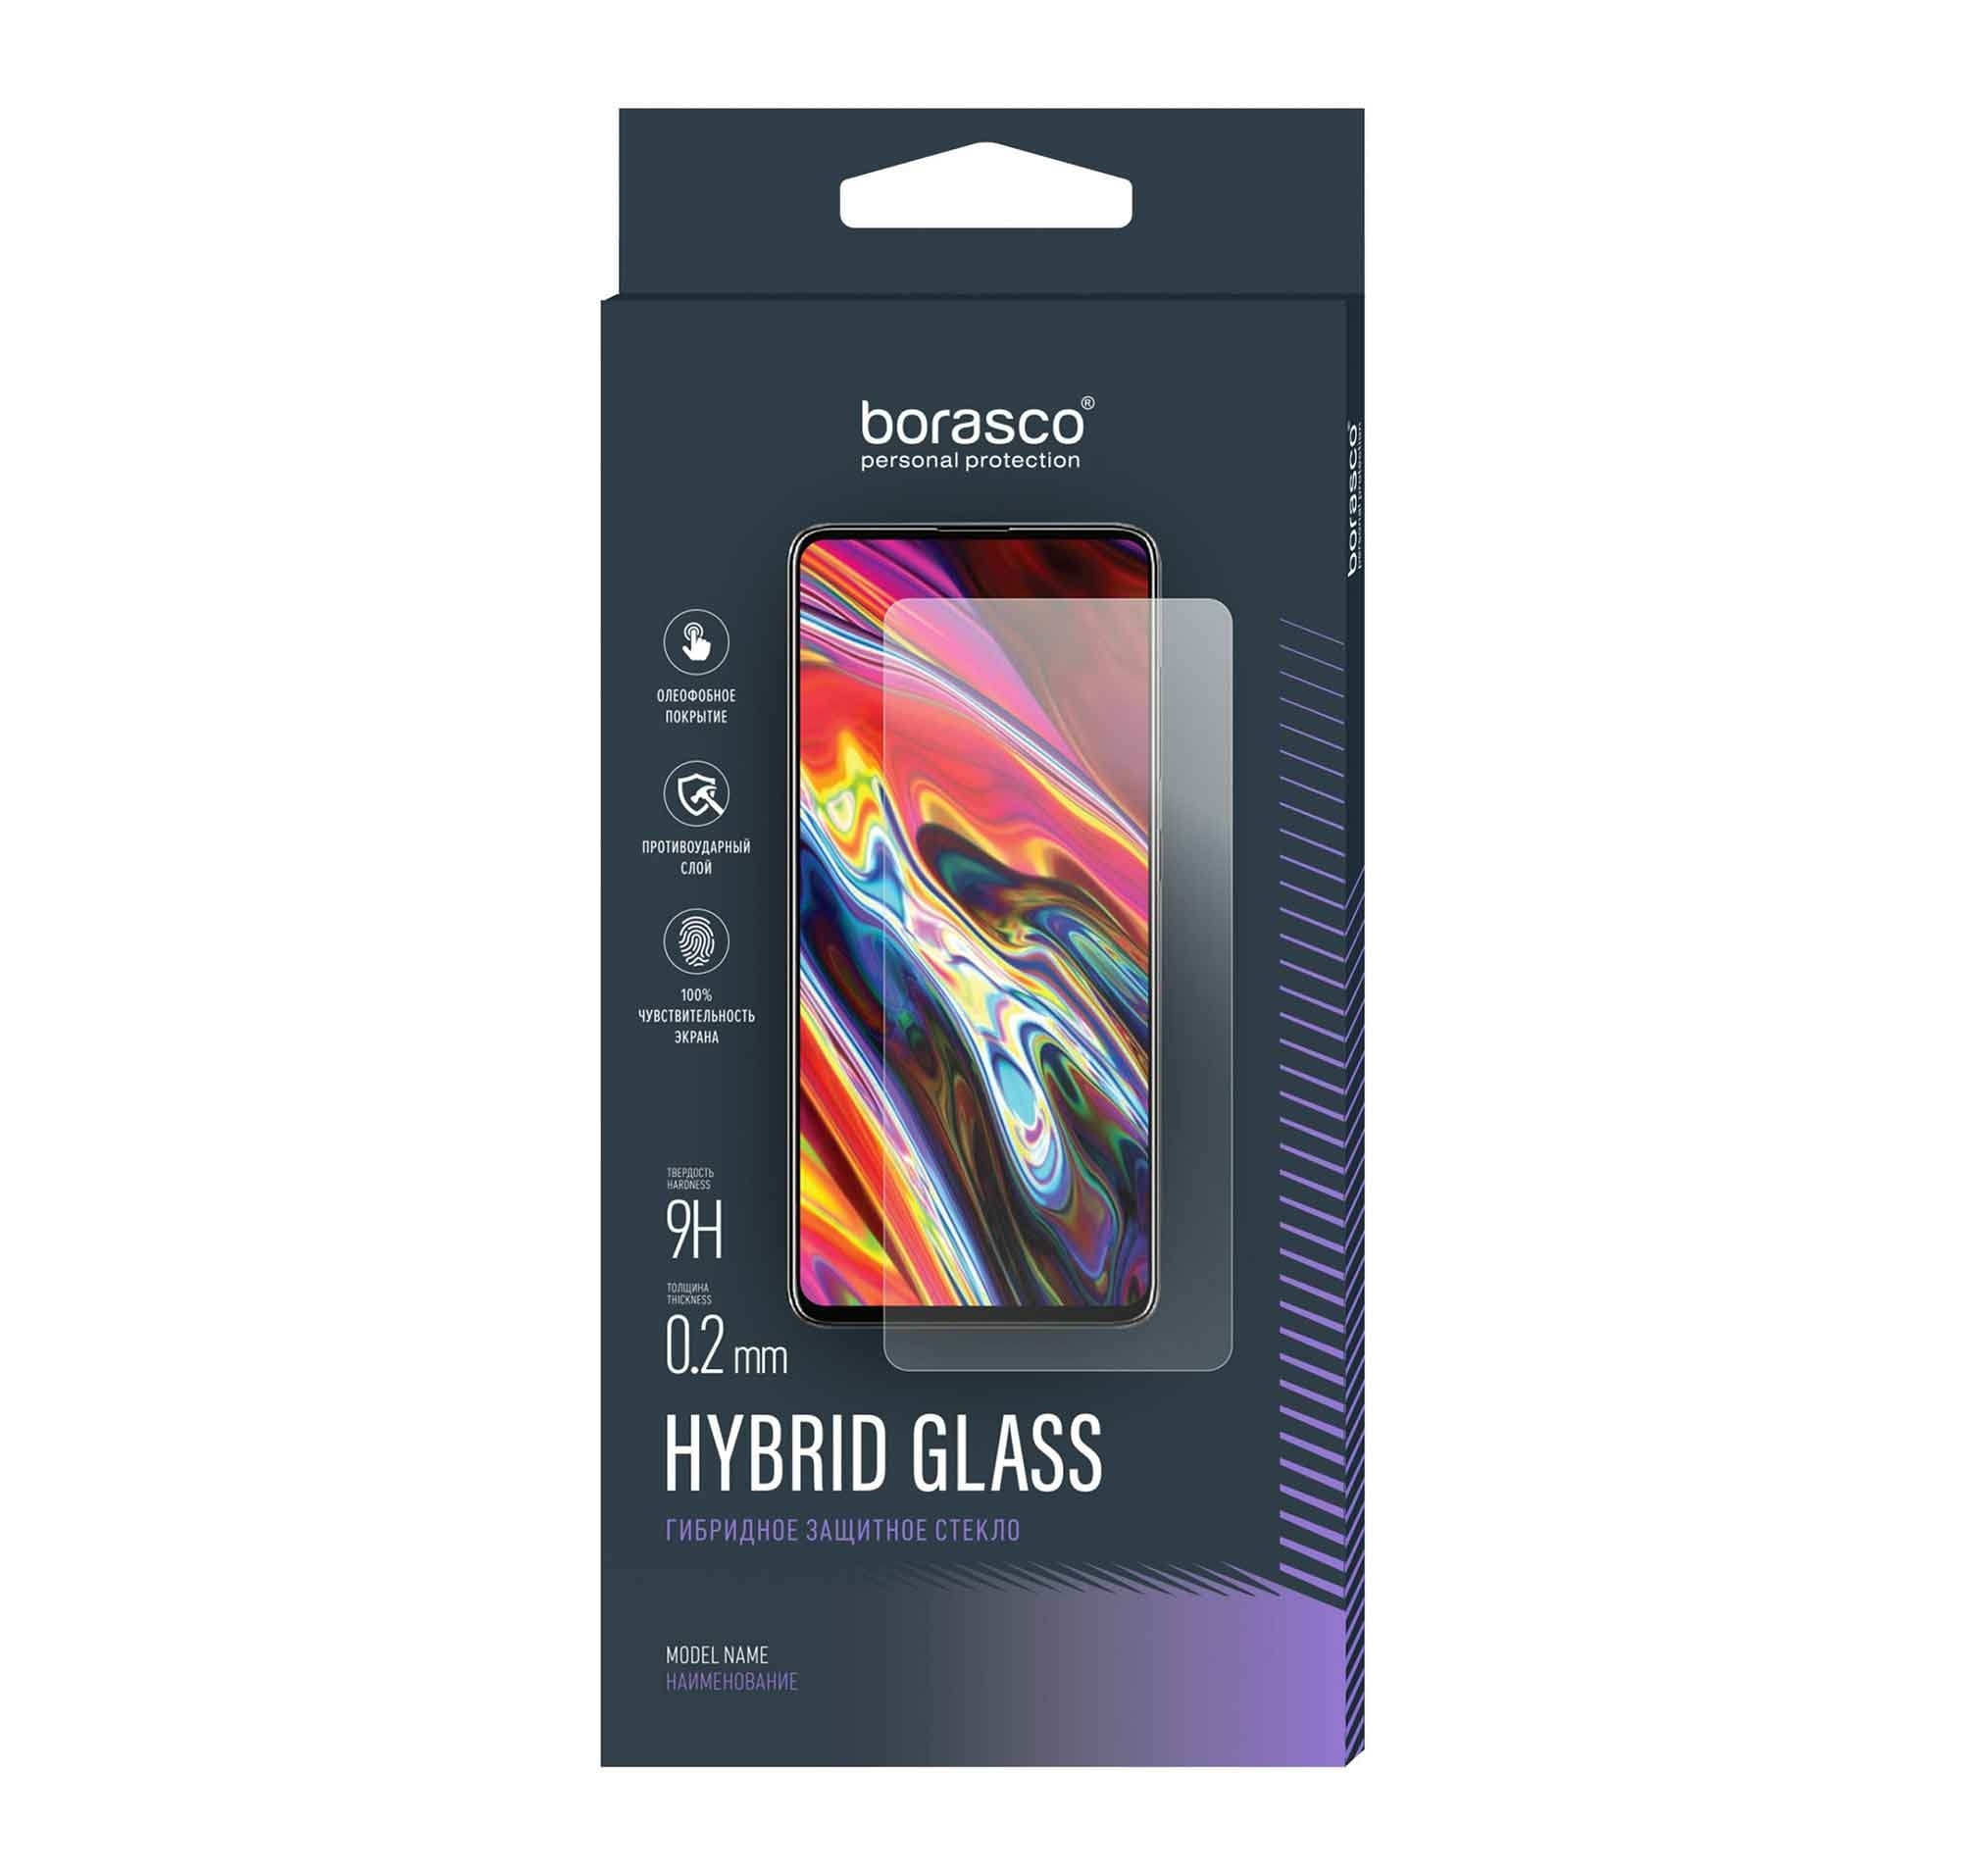 Стекло защитное BoraSCO Hybrid Glass для Oukitel F150 R2022 чехол mypads сними маску для oukitel f150 h2022 задняя панель накладка бампер